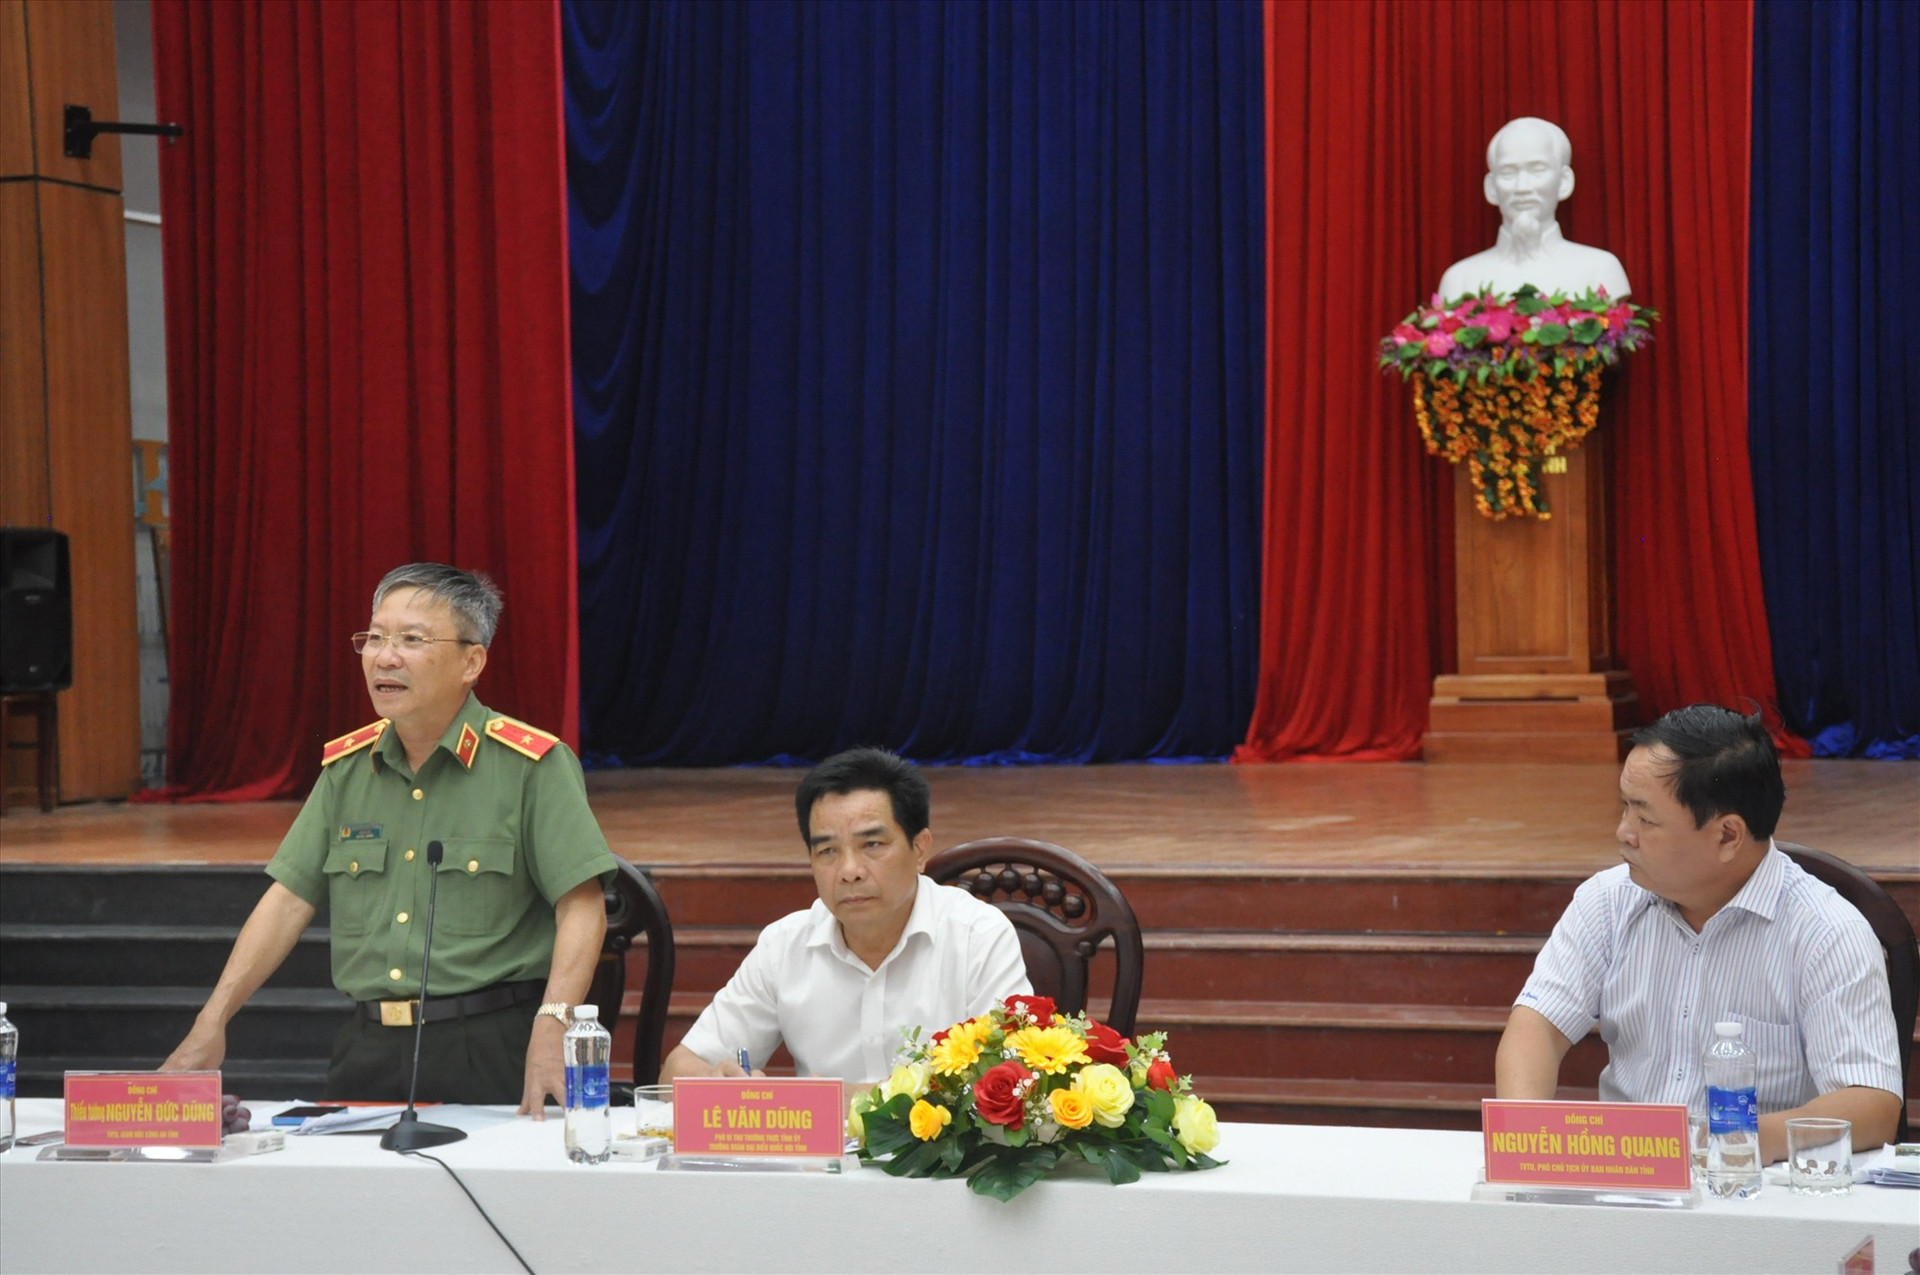 Thiếu tướng Nguyễn Đức Dũng lưu ý lãnh đạo địa phương về các vấn đề liên quan đến bảo vệ an ninh trật tự, an toàn xã hội trên địa bàn huyện Nông Sơn. Ảnh: N.Đ